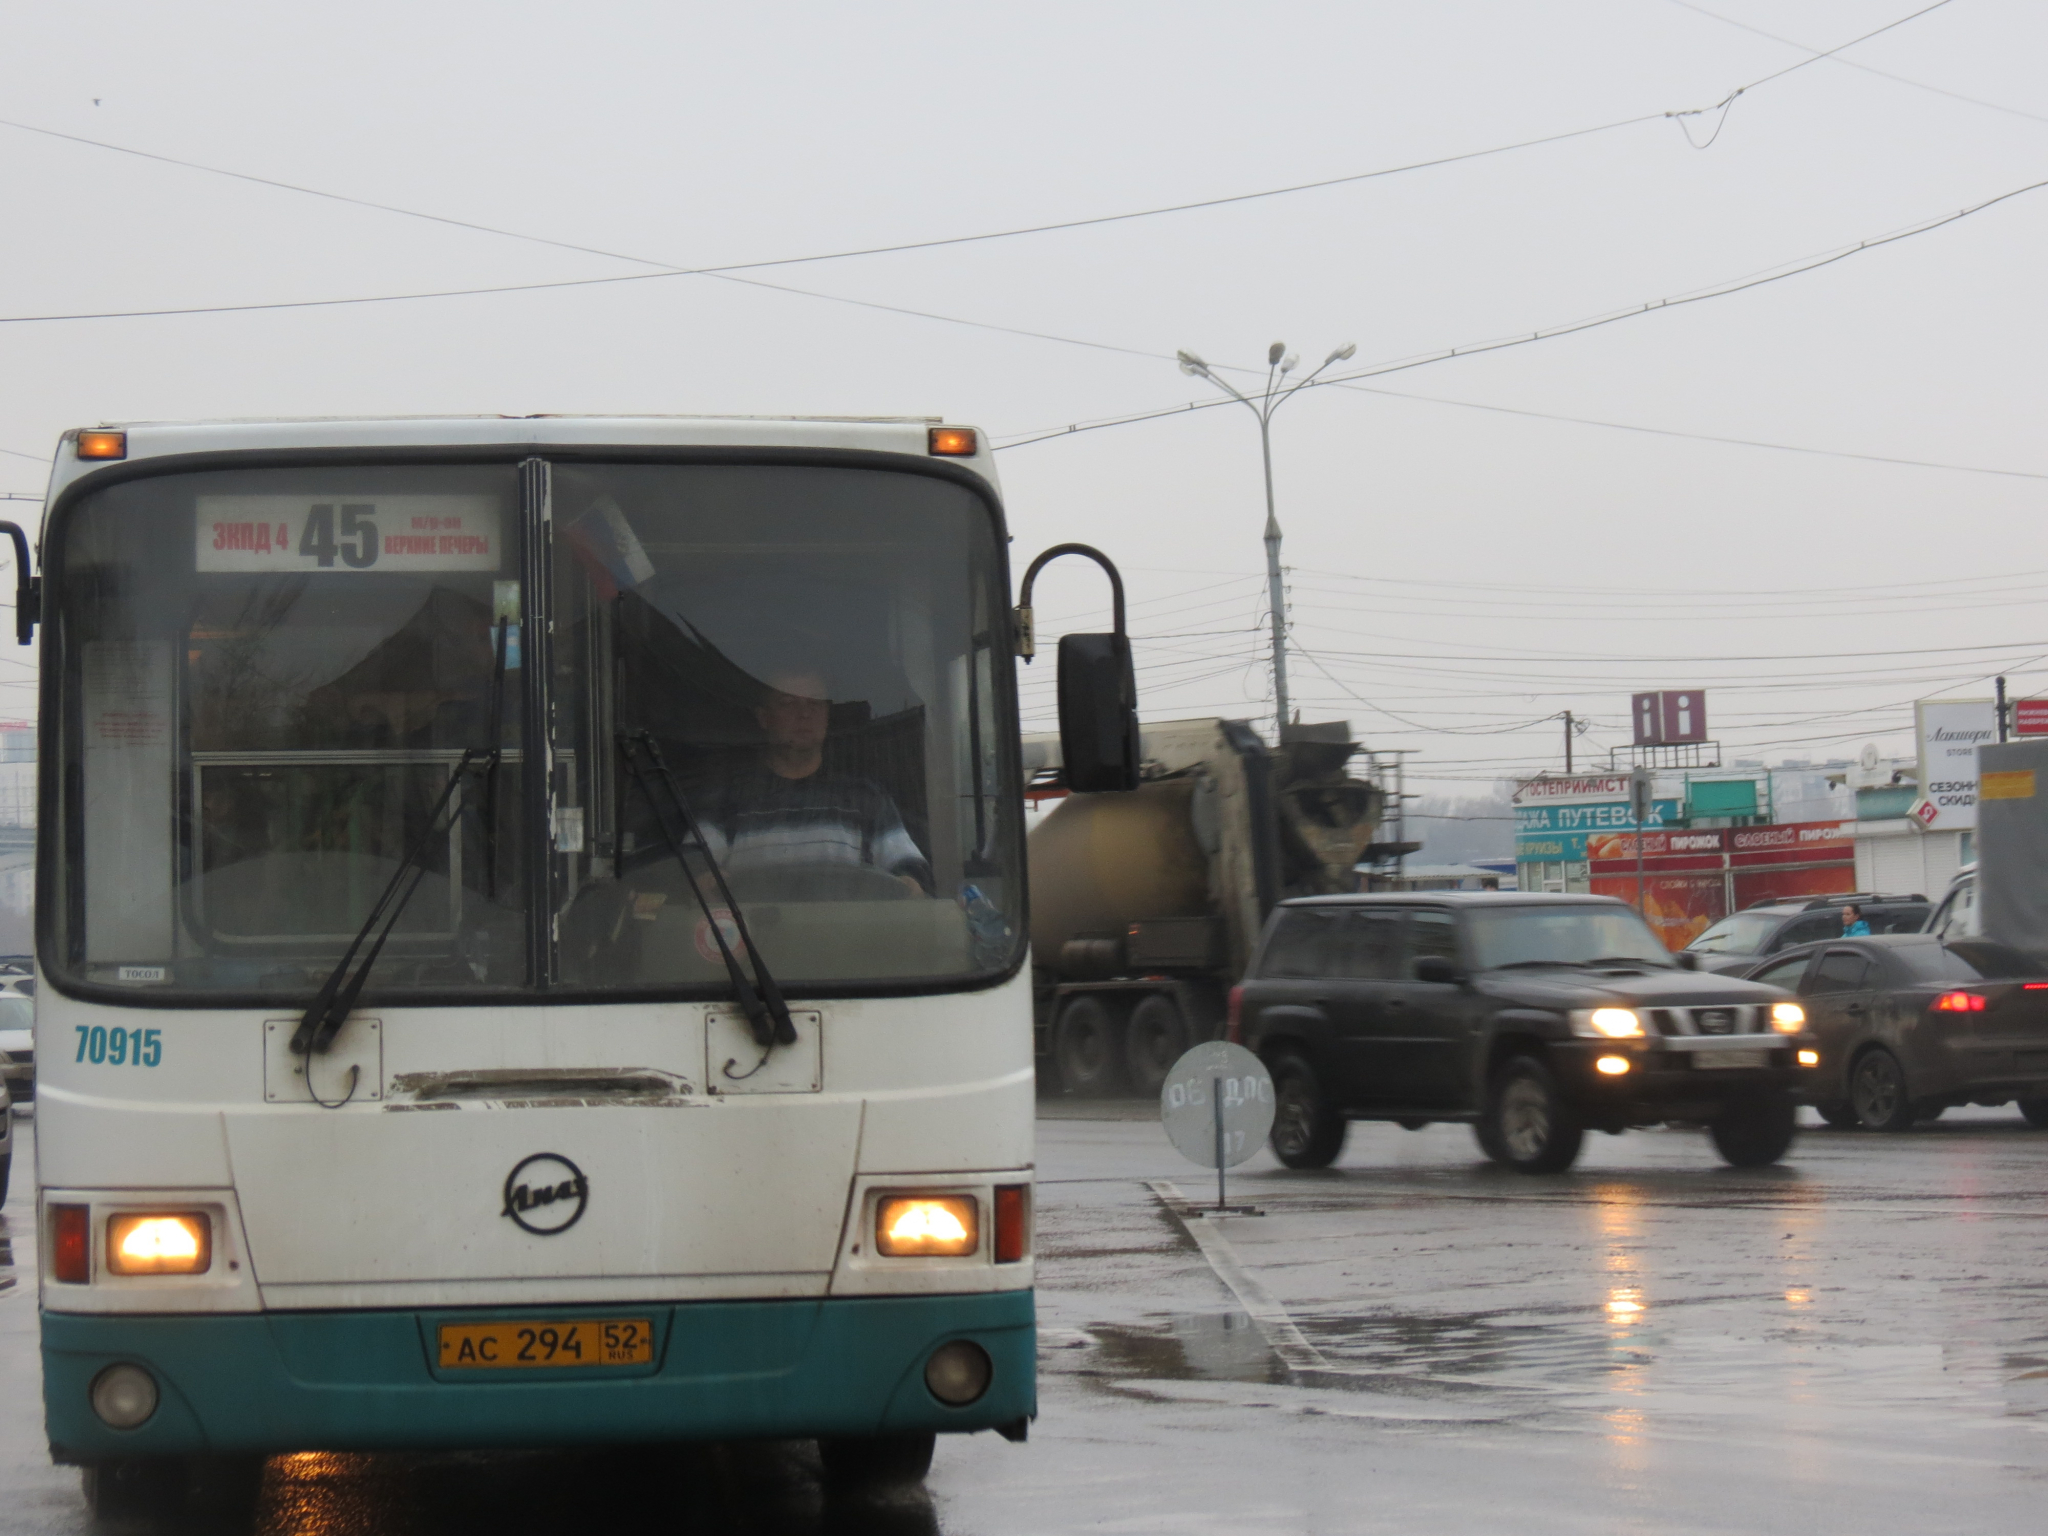 На трех улицах Нижнего Новгорода введут одностороннее движение транспорта 30 декабря